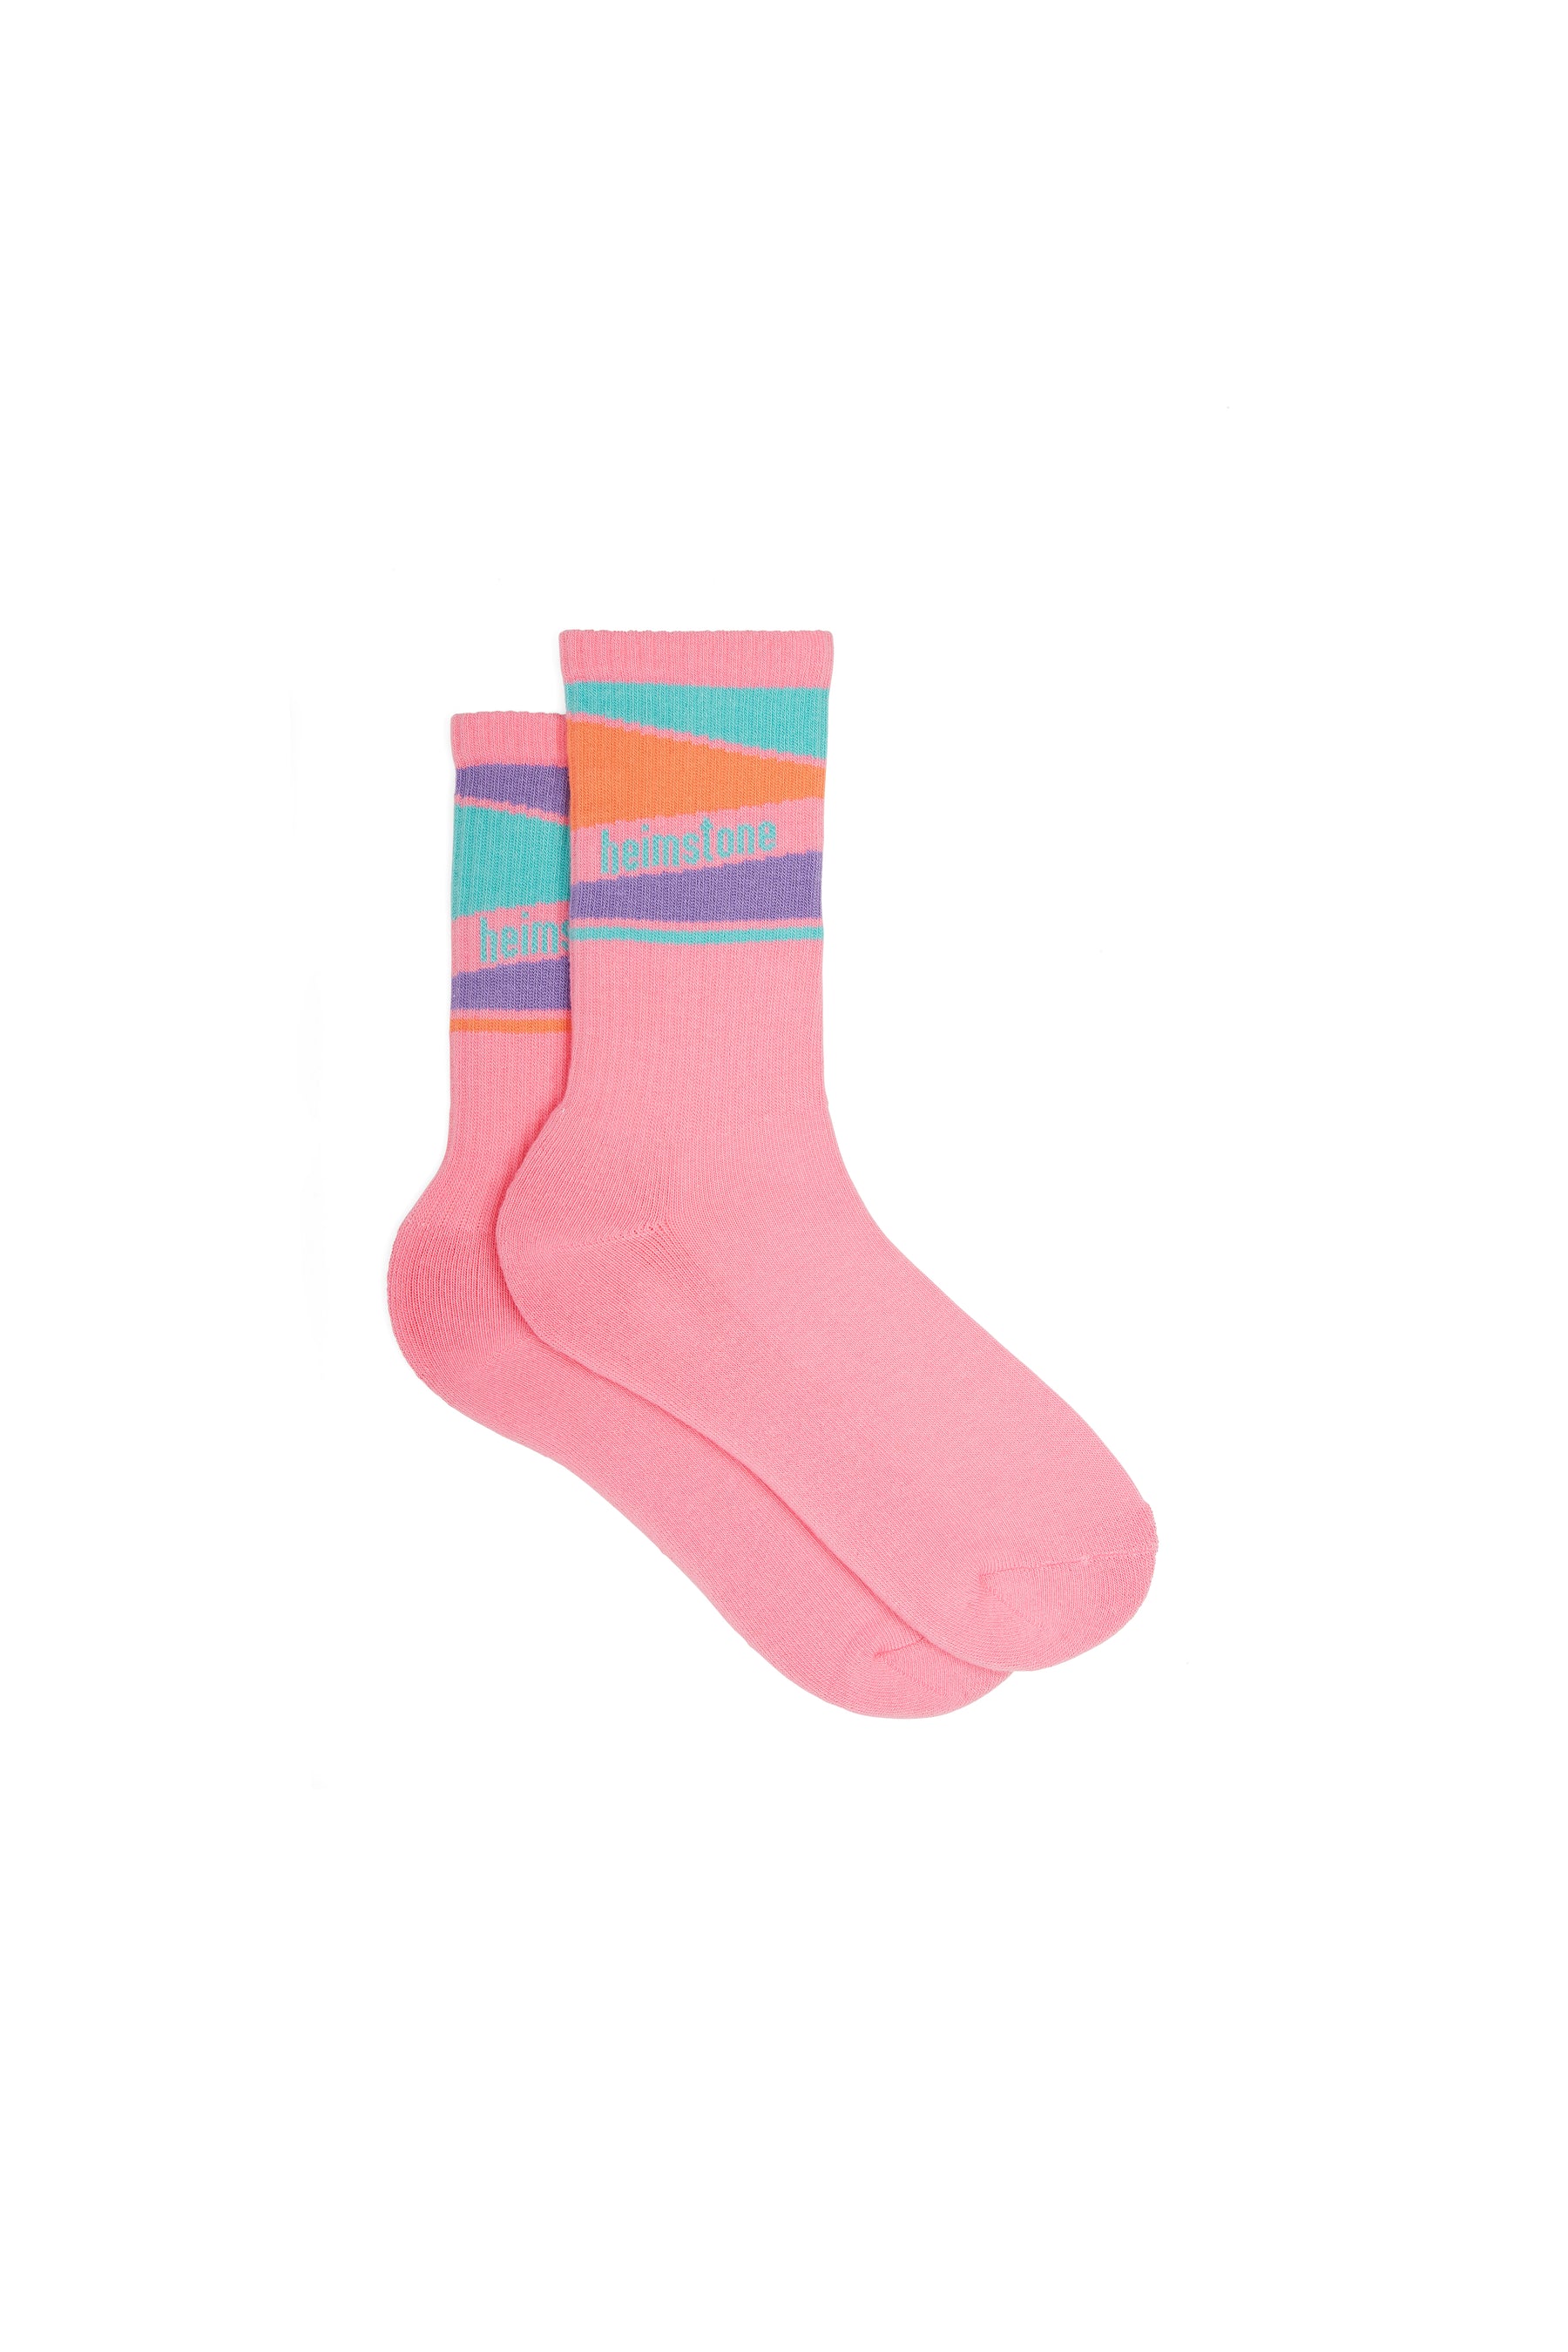 Sport socks in neon pink